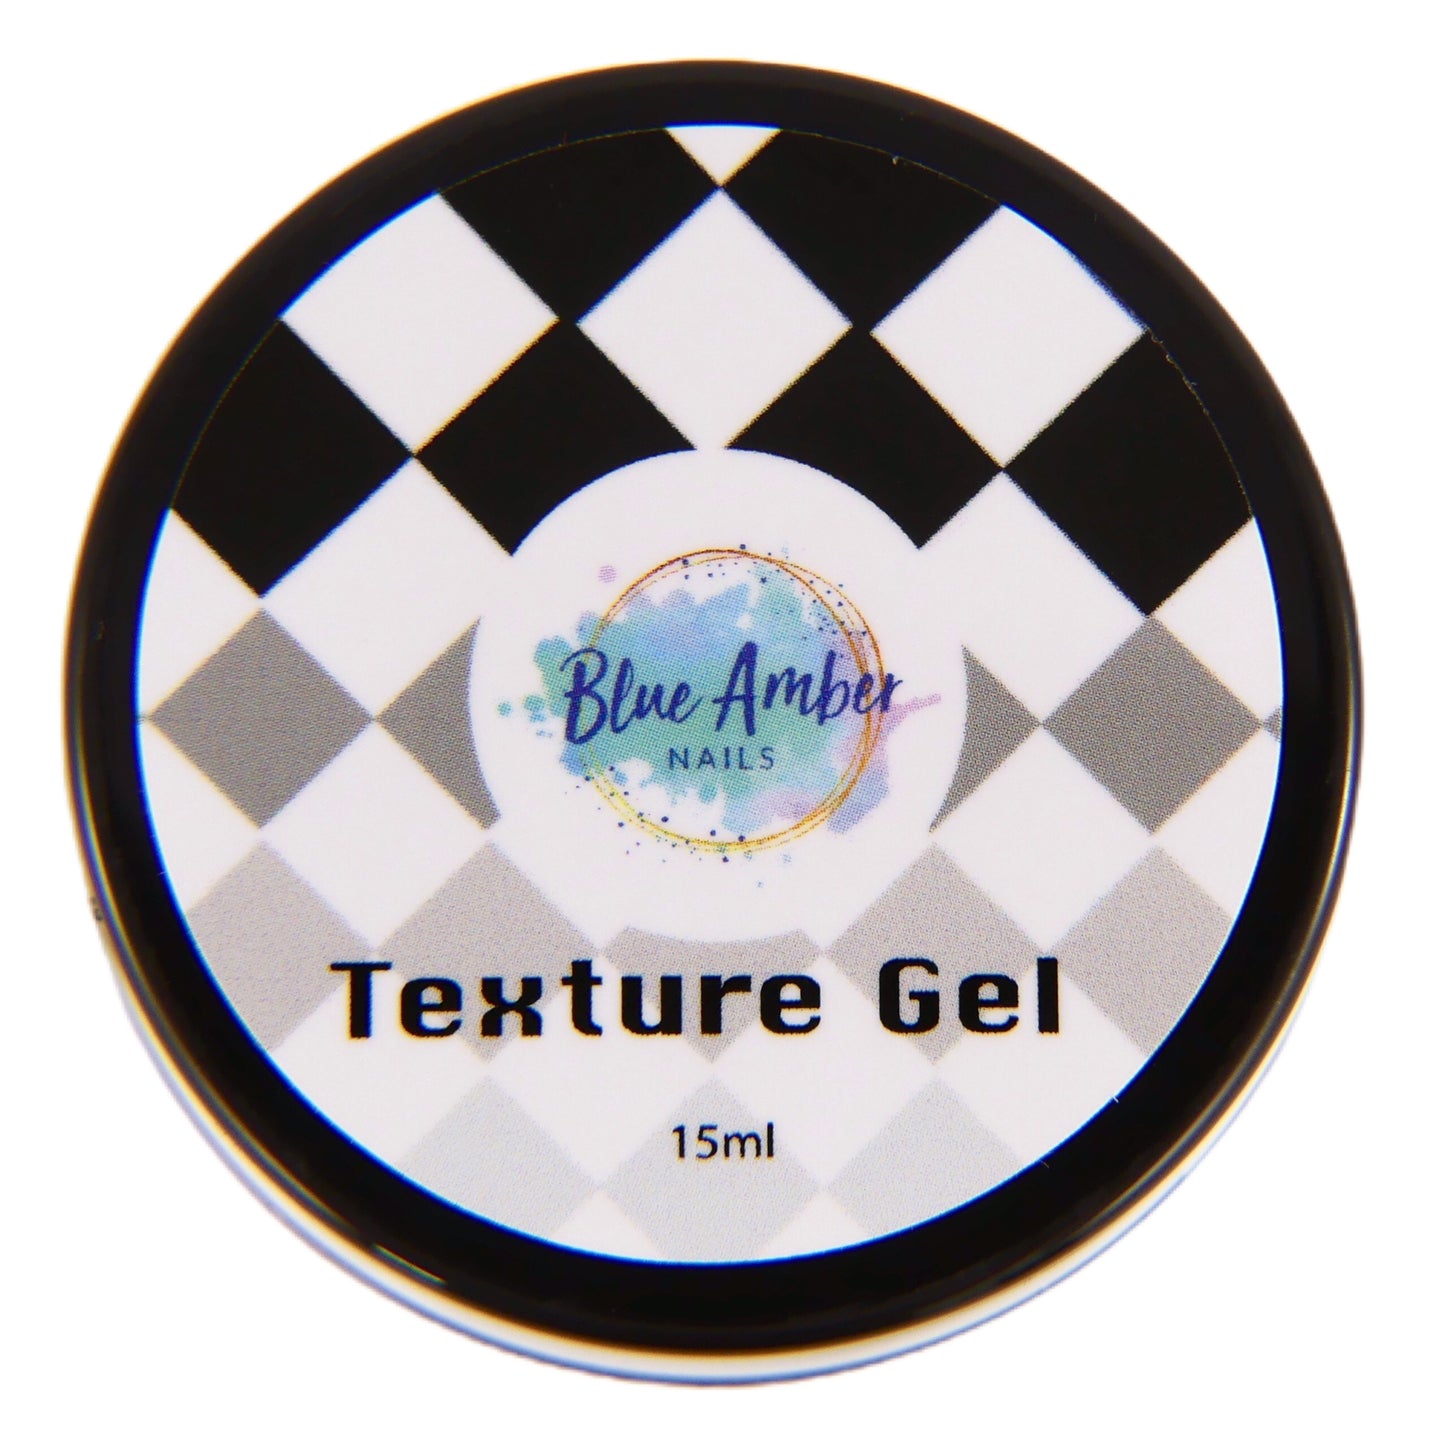 Texture Gel 15ml - My Little Nail Art Shop